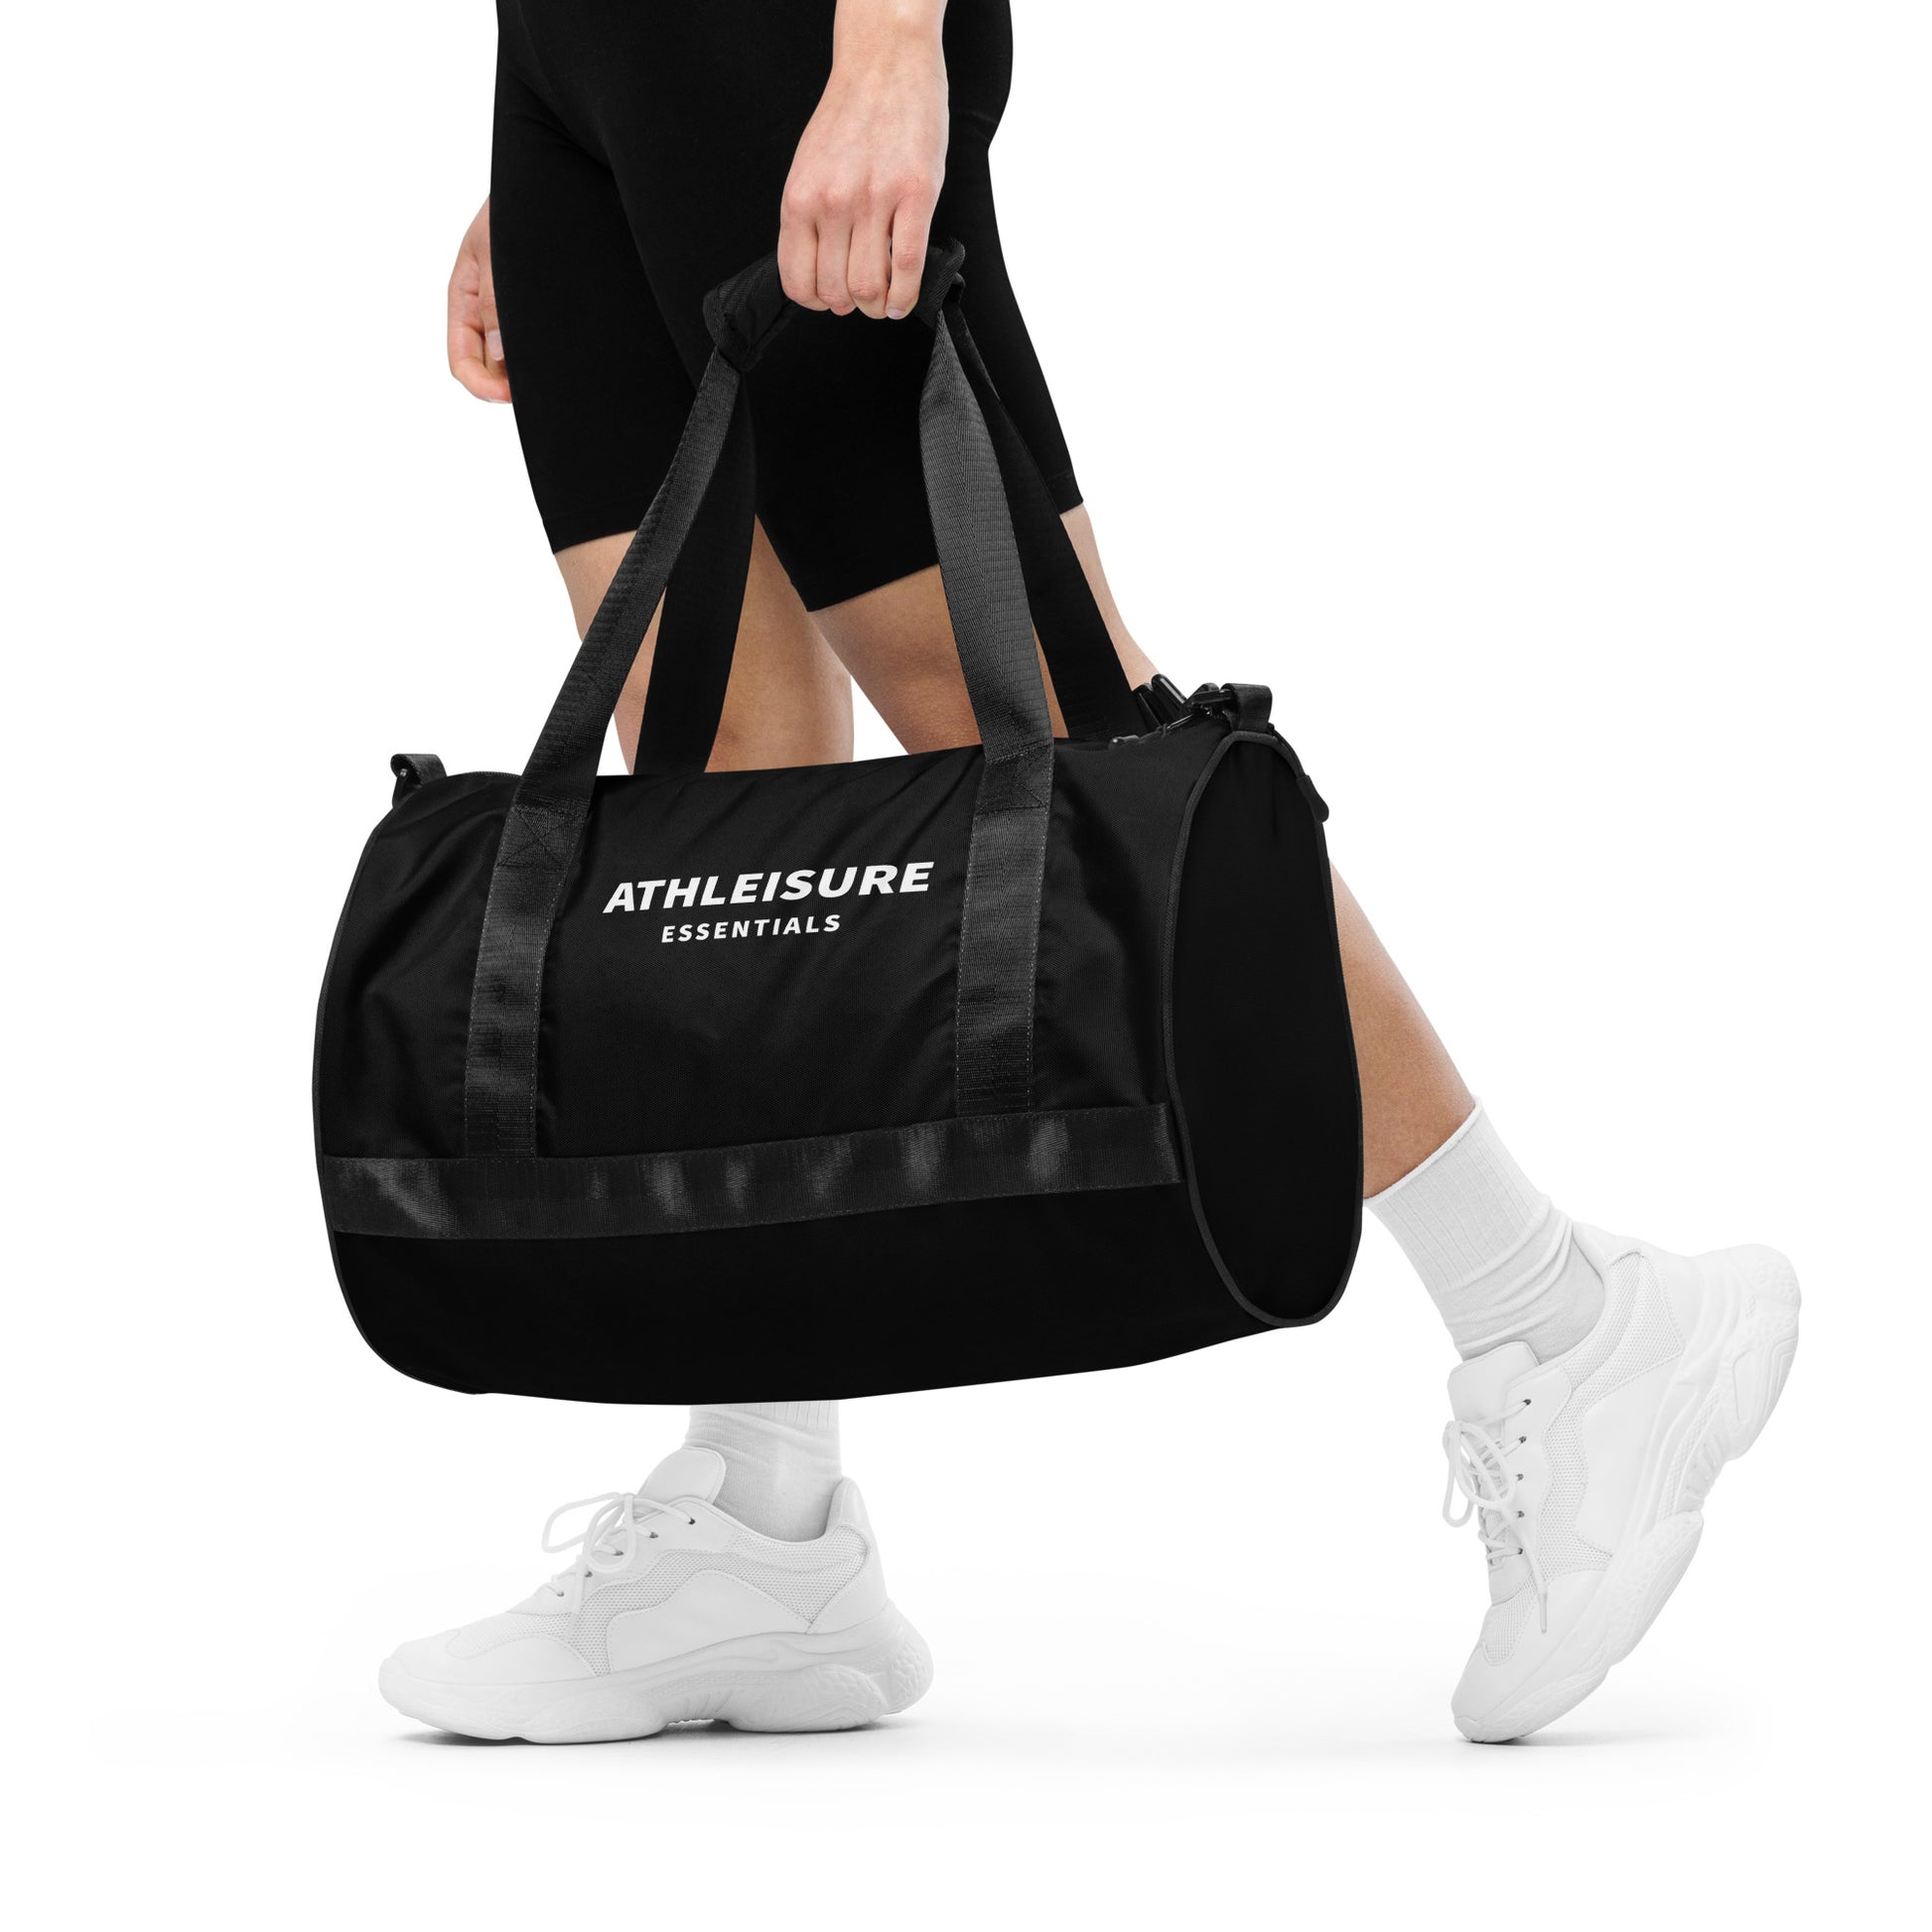 Gym bag essentials updated – The pecas